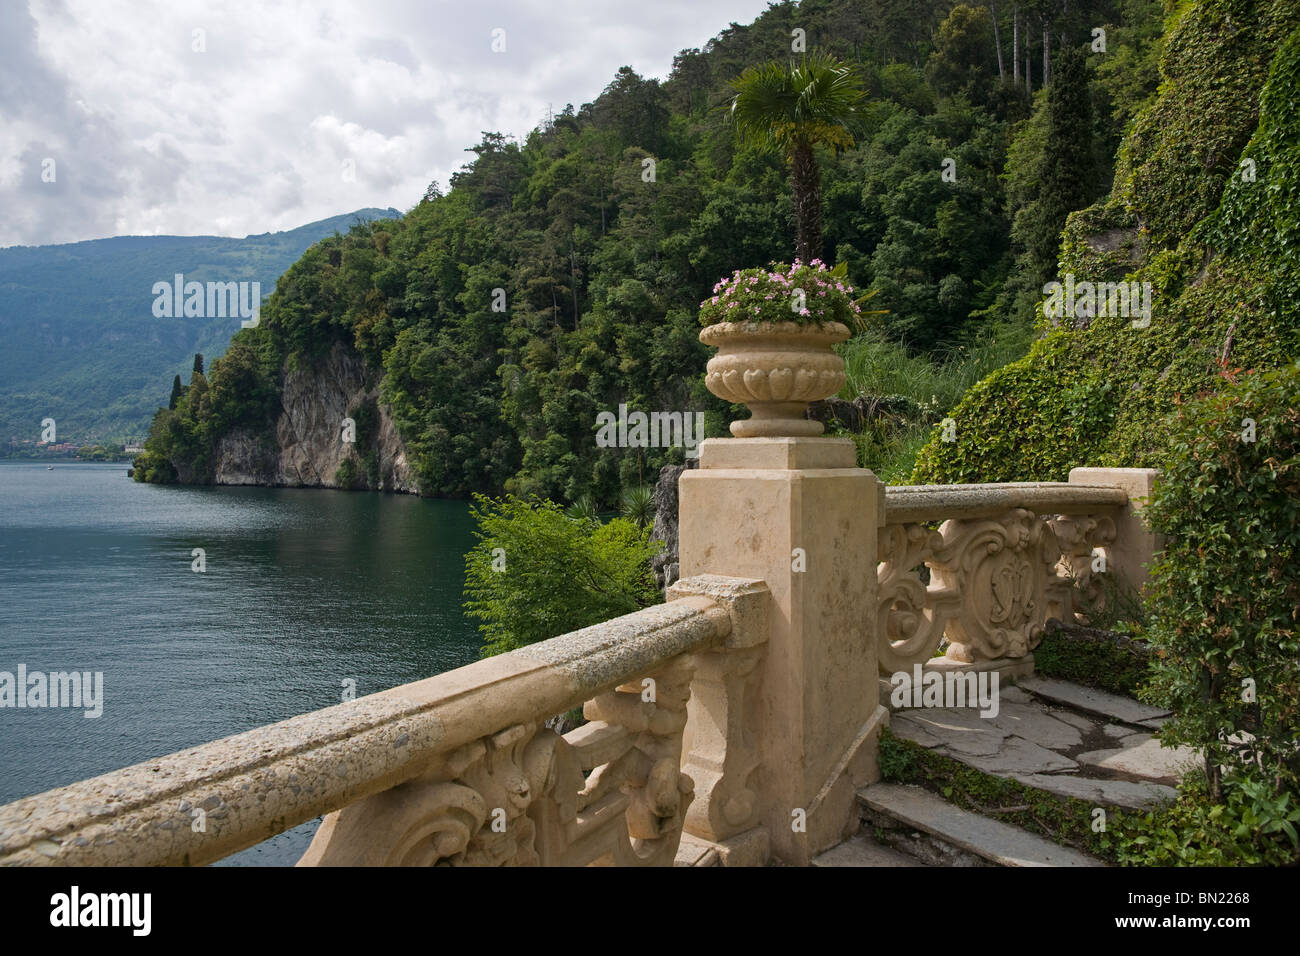 View from Villa del Balbianello, Lenno, Lake Como, Italy Stock Photo